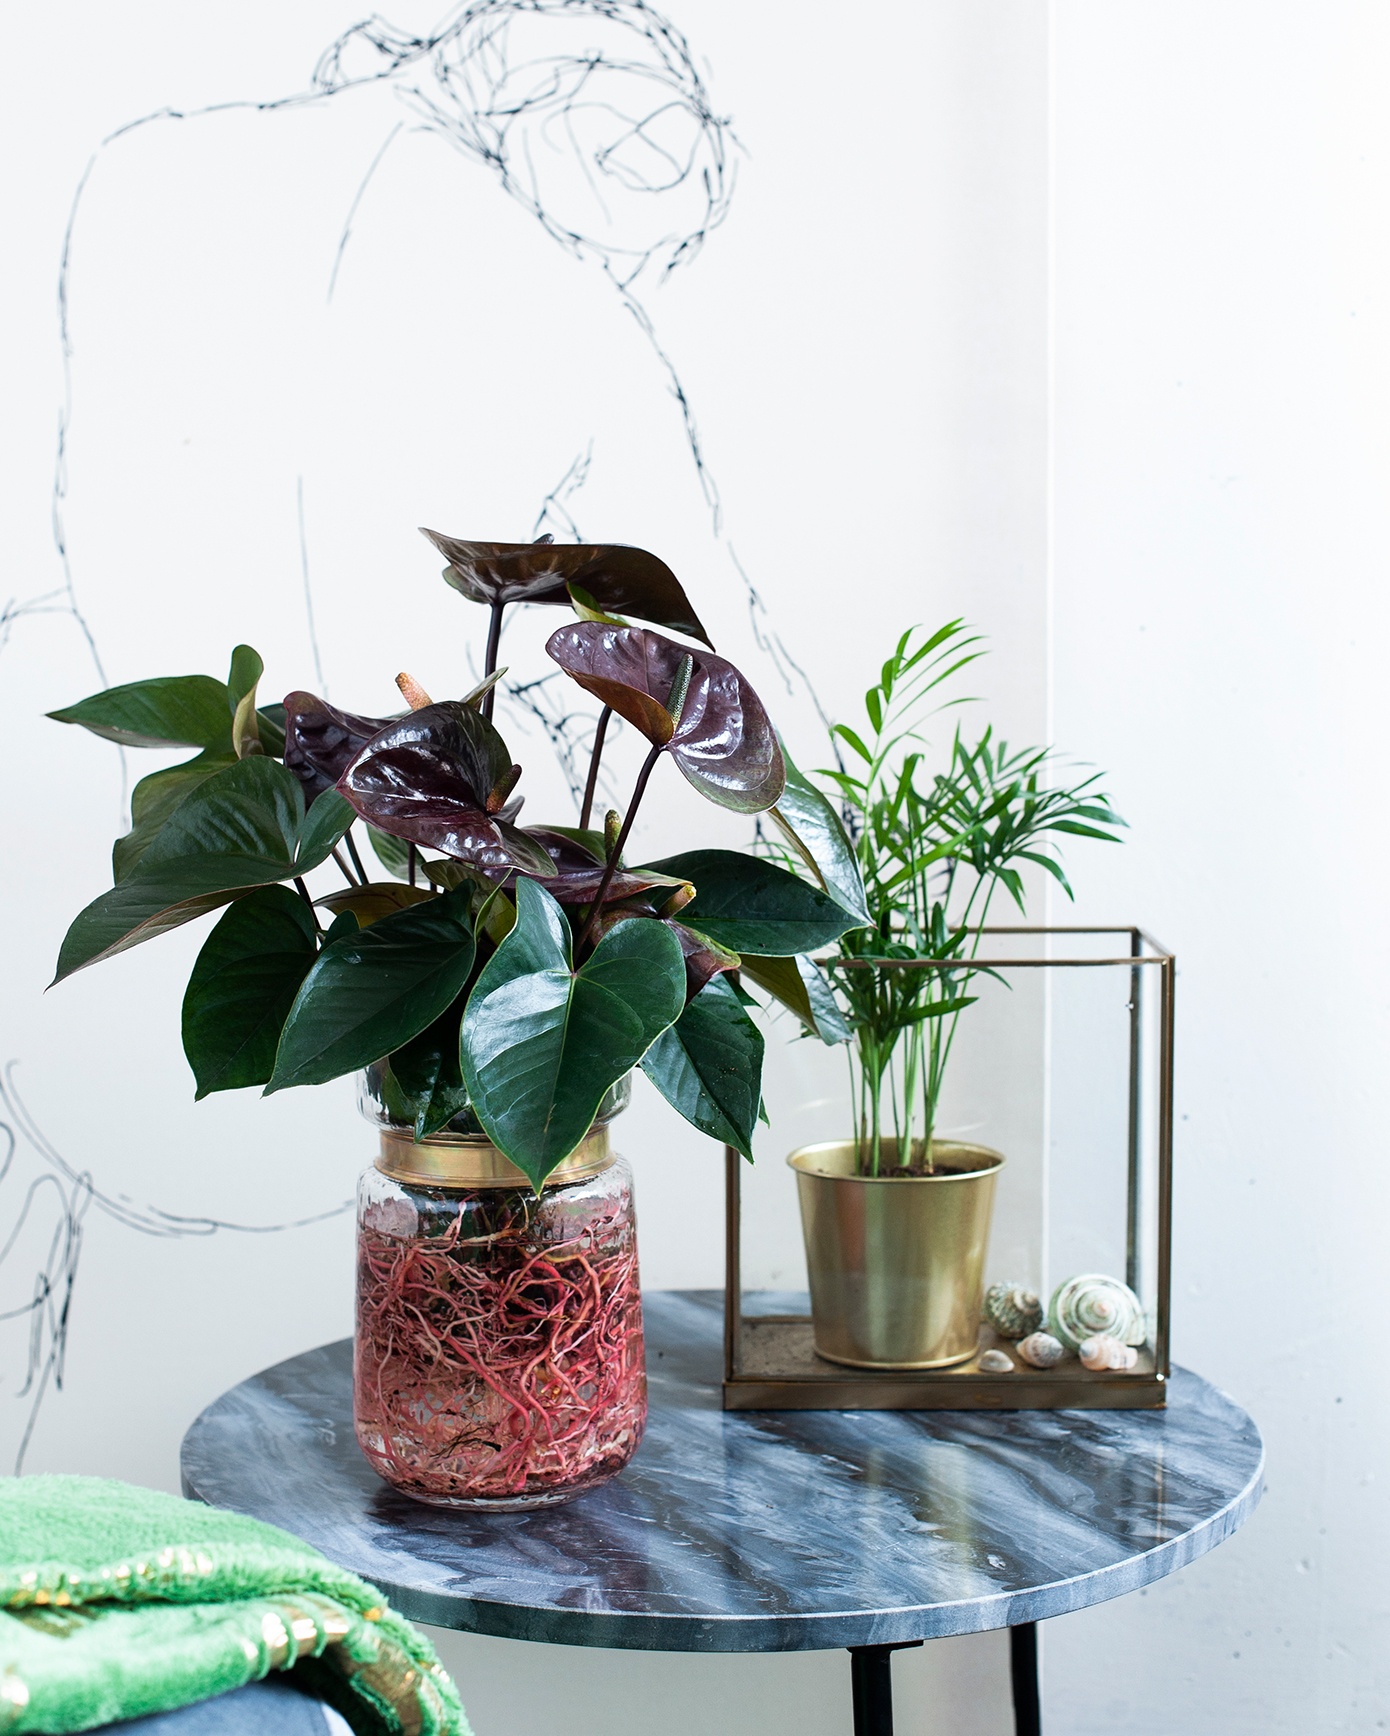 Verleihen Sie Ihrem Interieur einen farbenfrohen, exotischen „Look“ mit Pflanzen